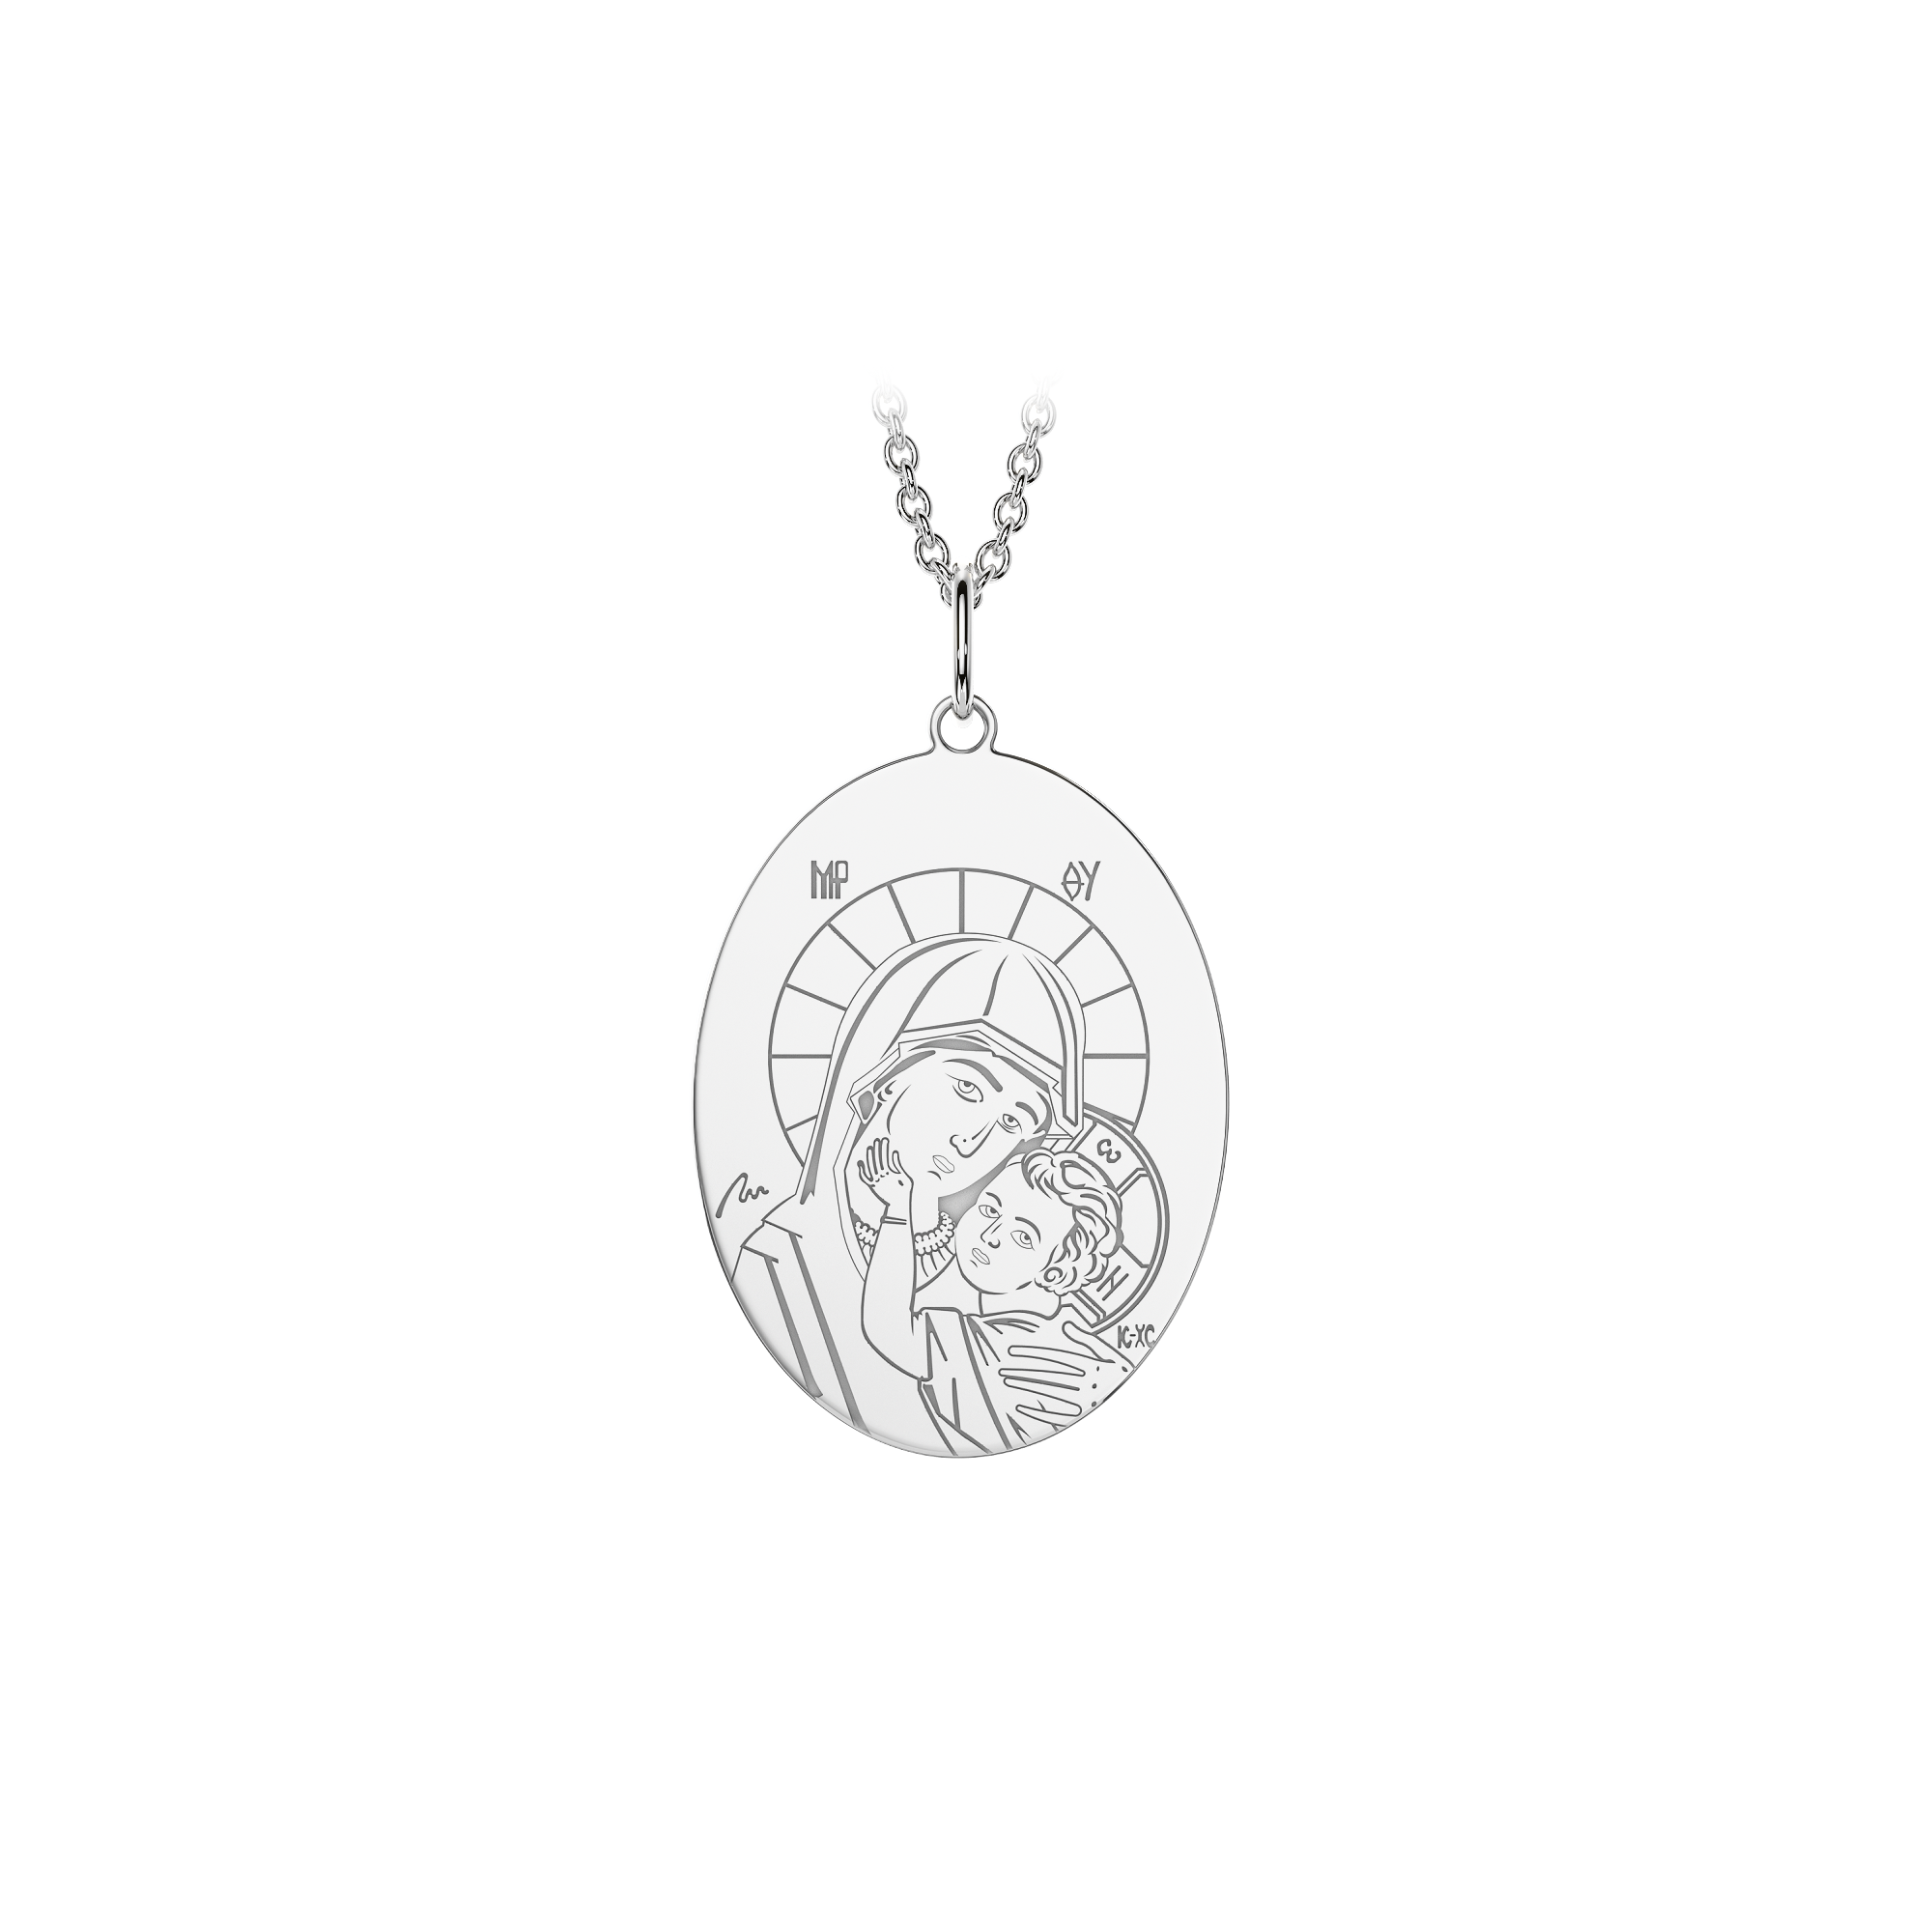 14 k white gold Virgin Mary pendant